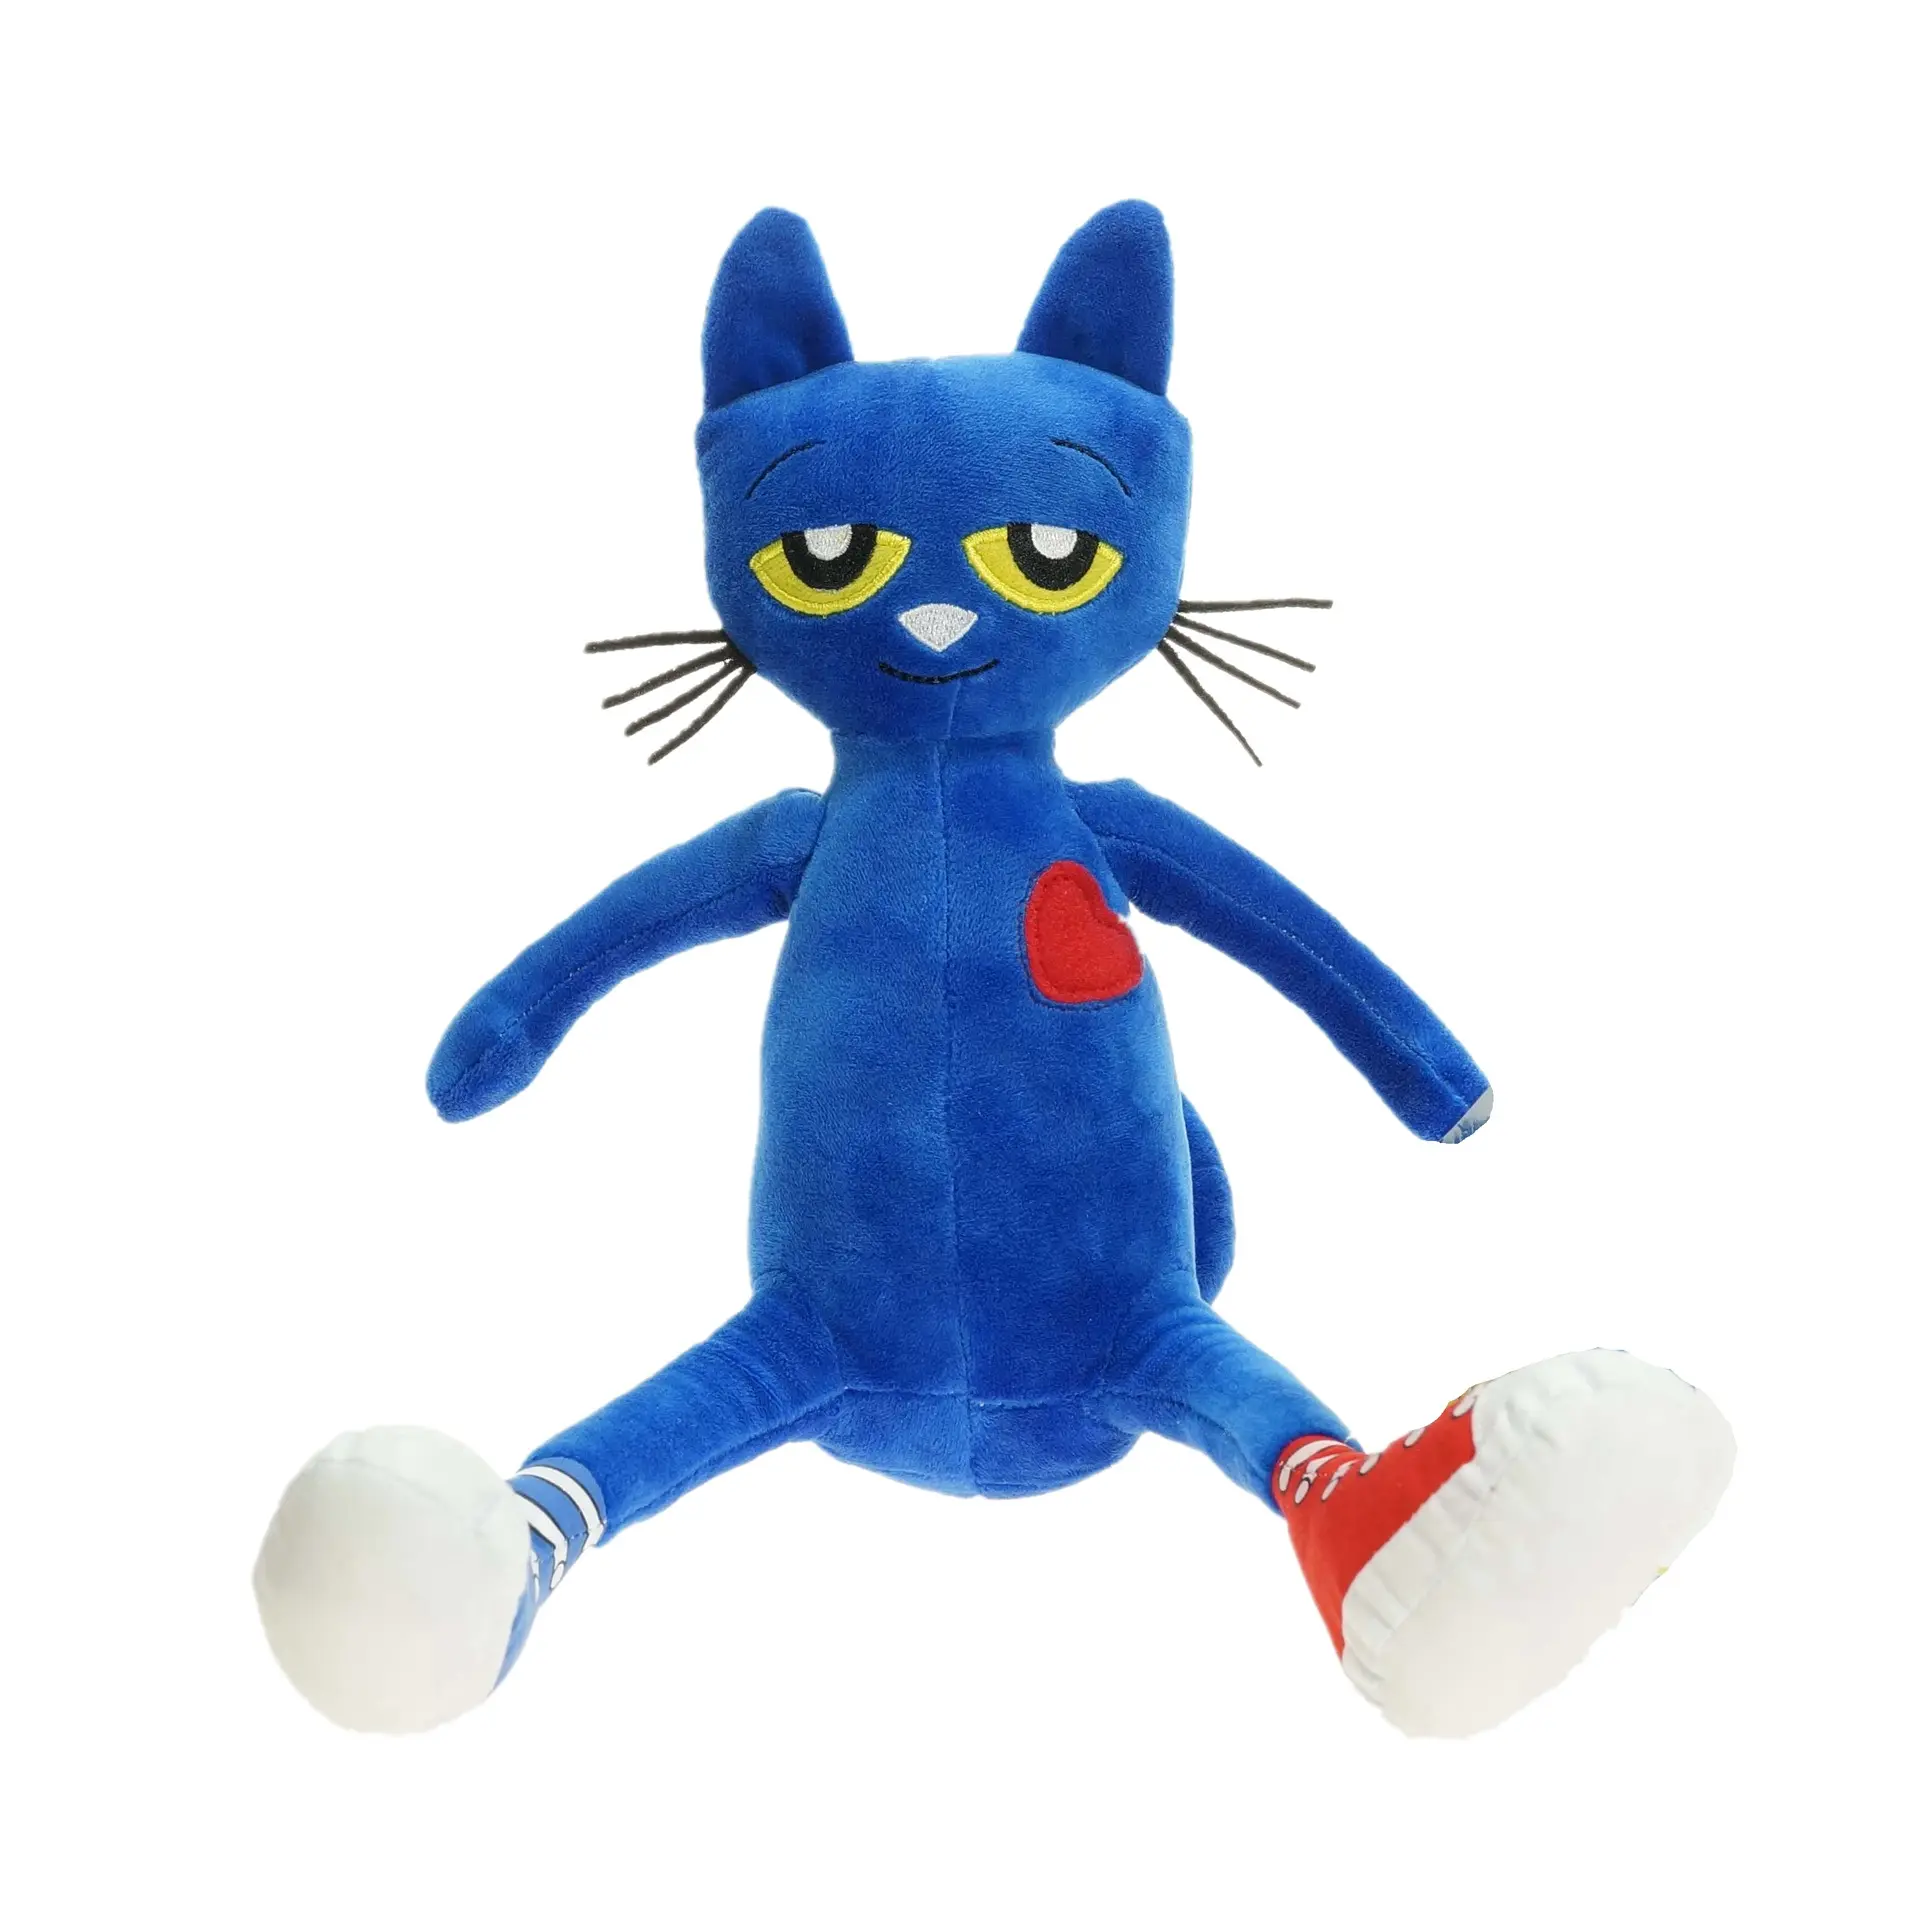 Animales de peluche Juguetes de dibujos animados Lindo gato con expresión en la cara Juguete de peluche personalizado Pete azul-El gato Juguetes de animales de peluche con guitarra